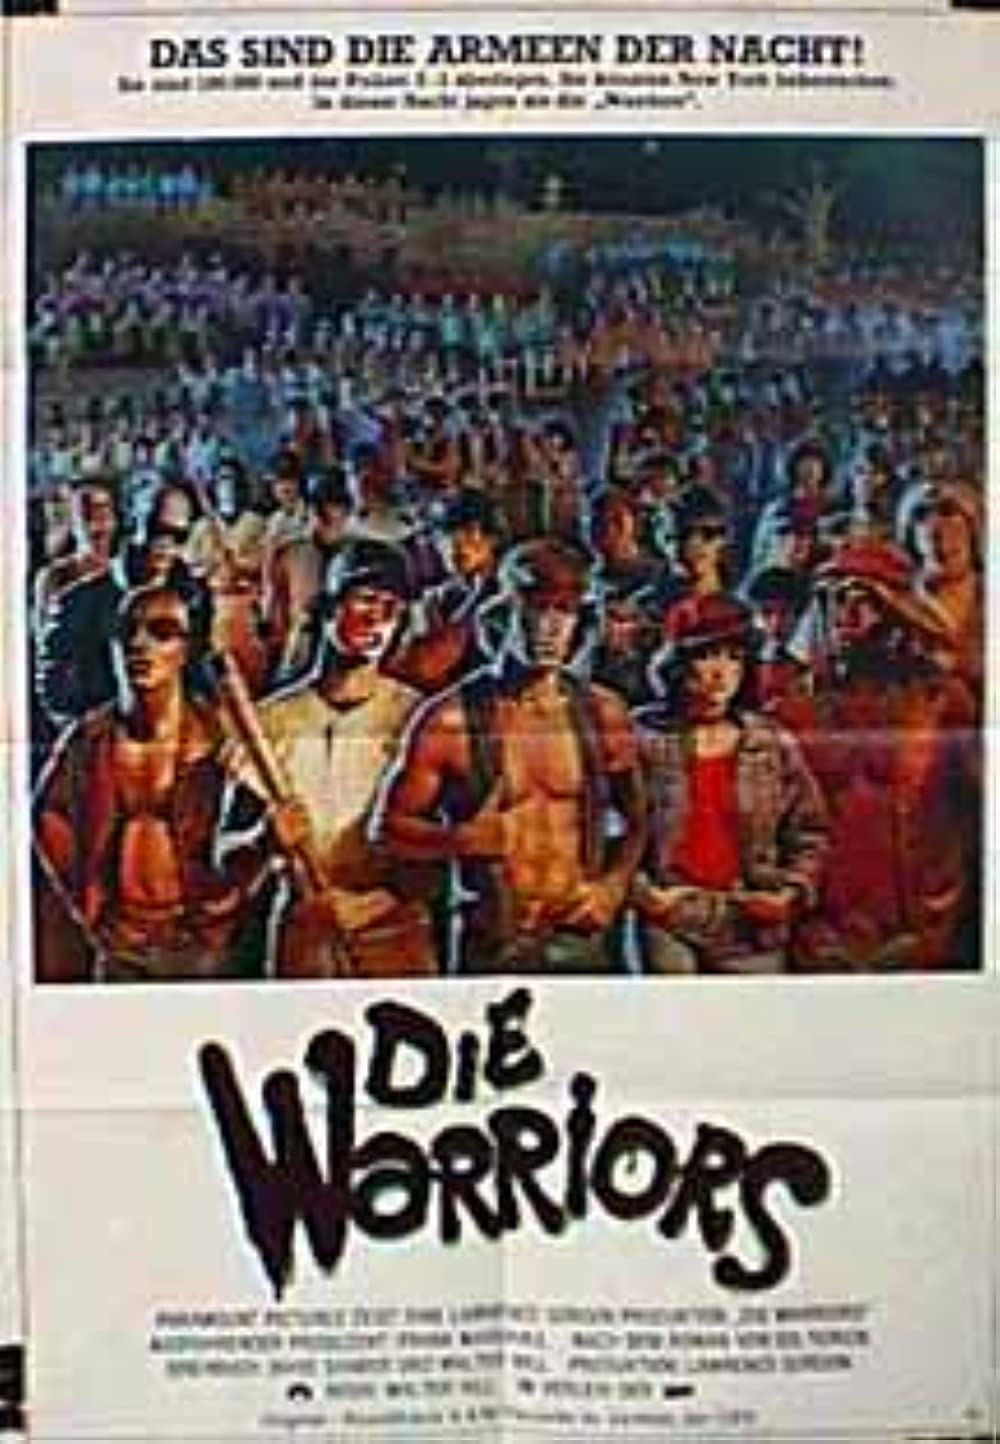 Filmbeschreibung zu The Warriors (OV)